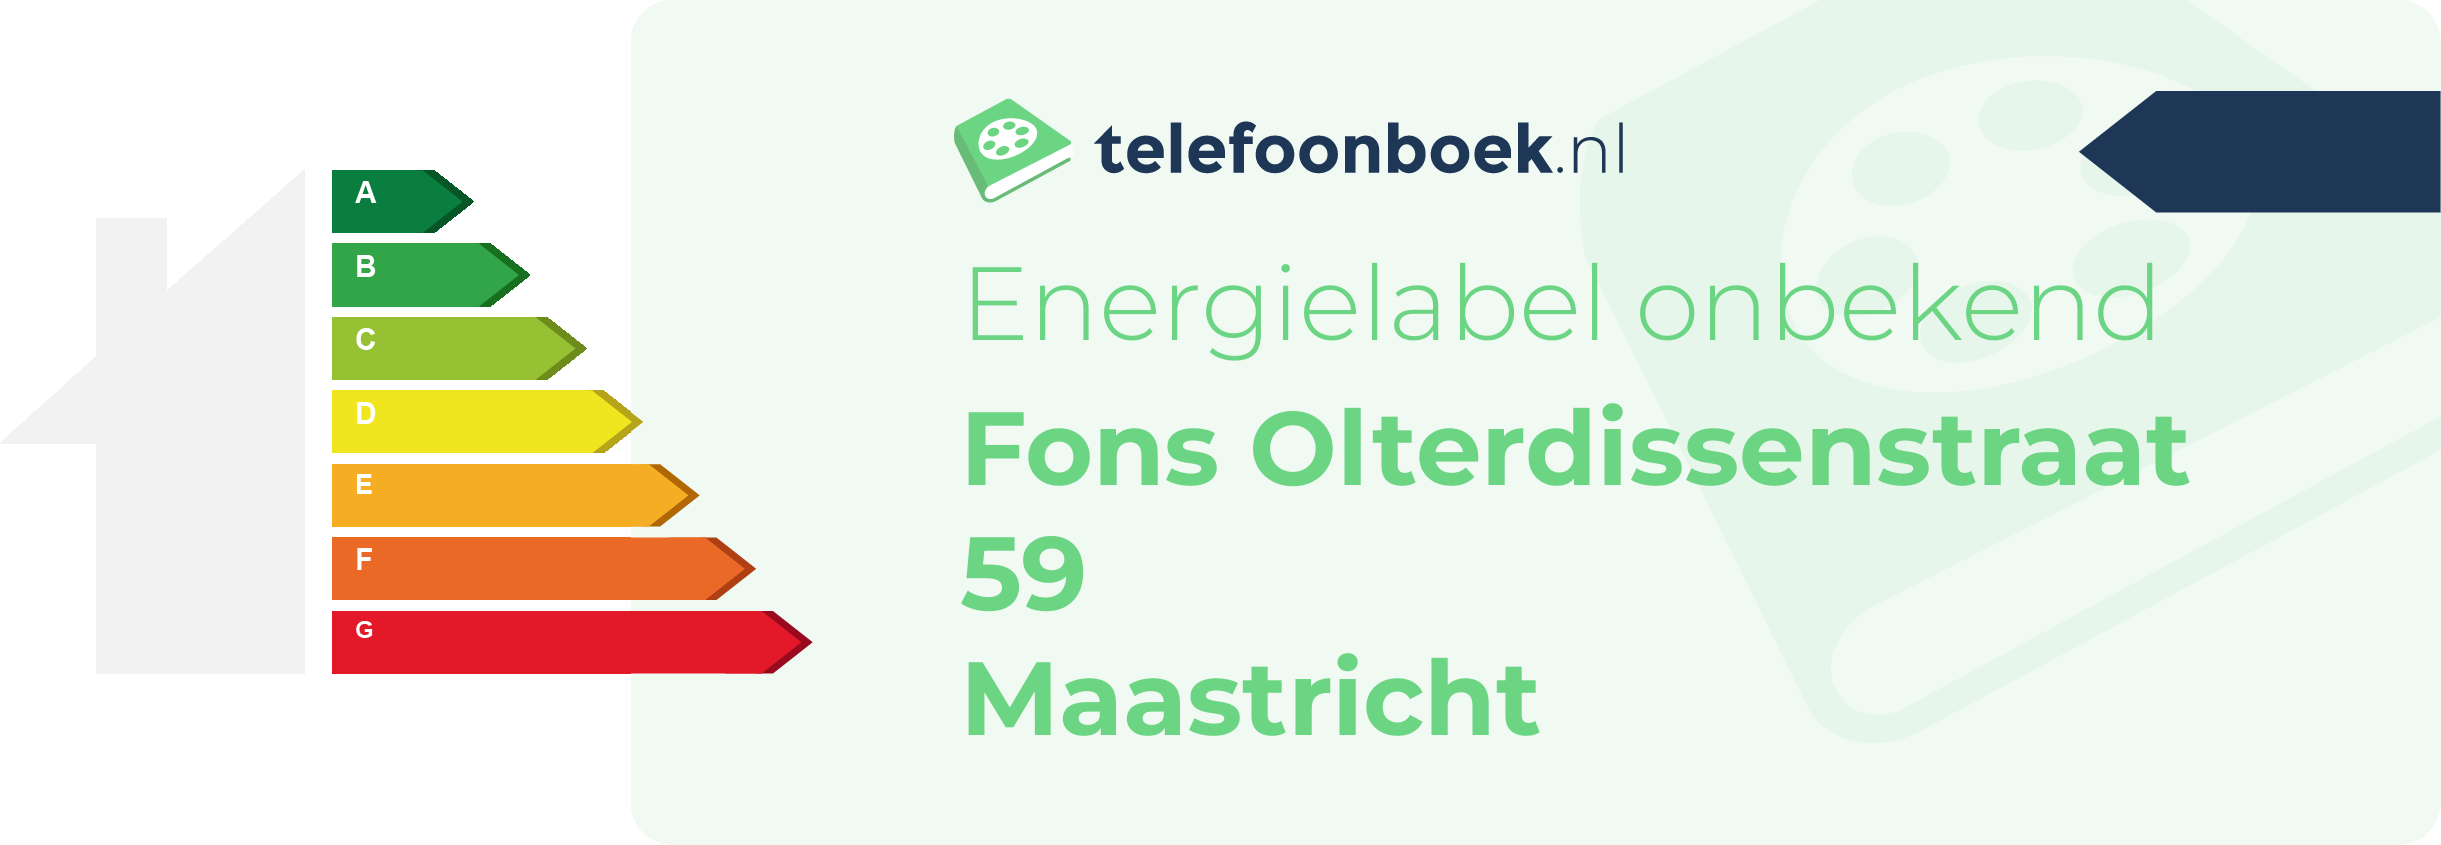 Energielabel Fons Olterdissenstraat 59 Maastricht